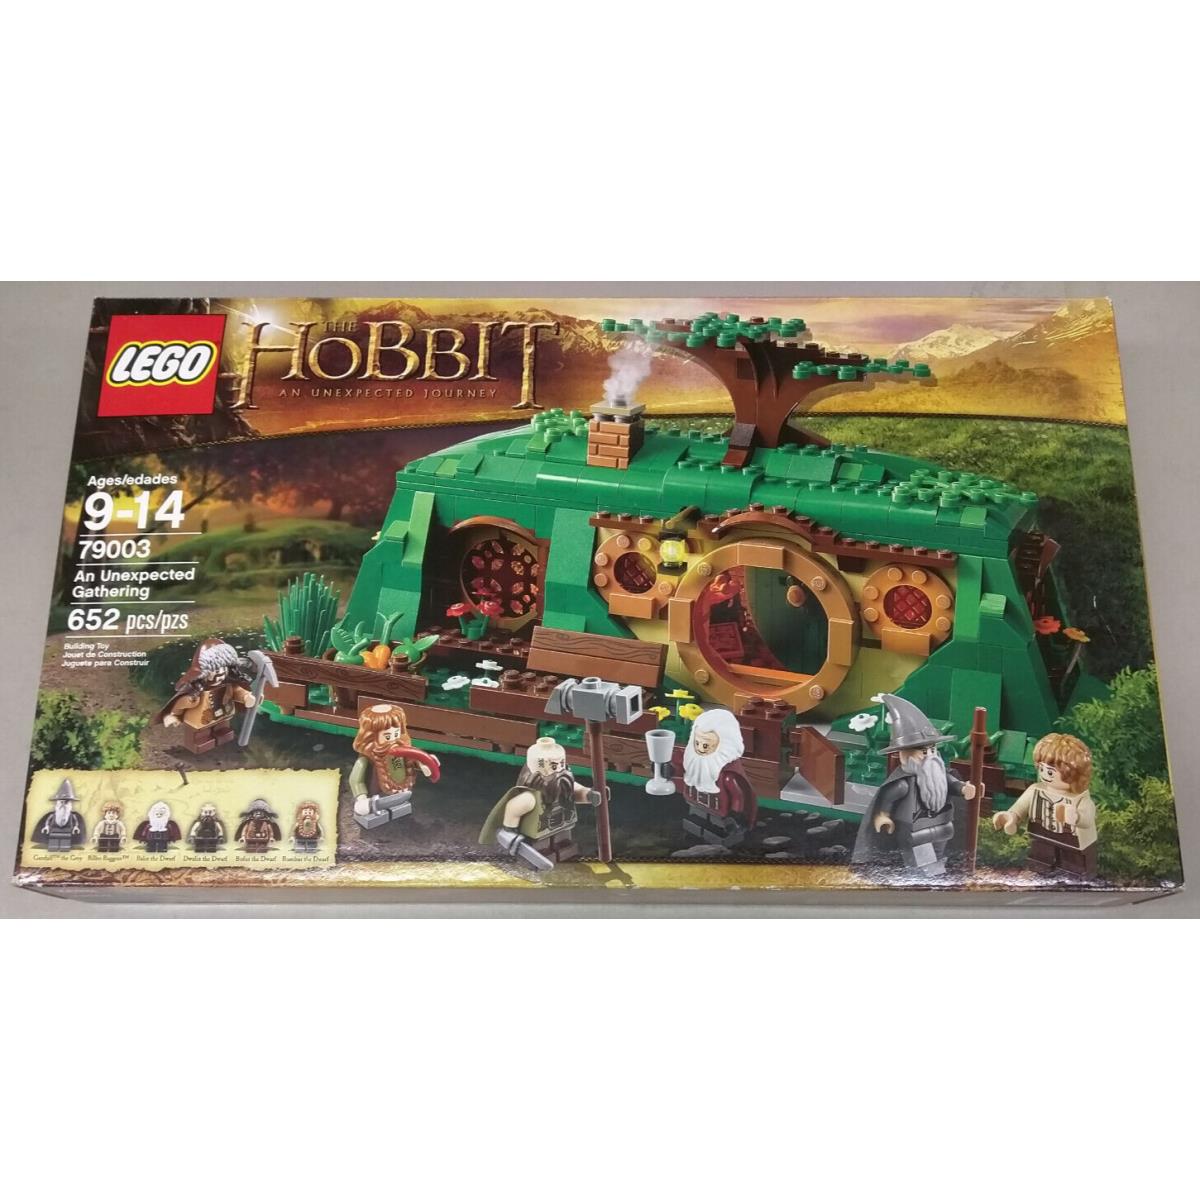 Lego The Hobbit 79003 An Unexpected Gathering Gandalf Bag End Bilbo House